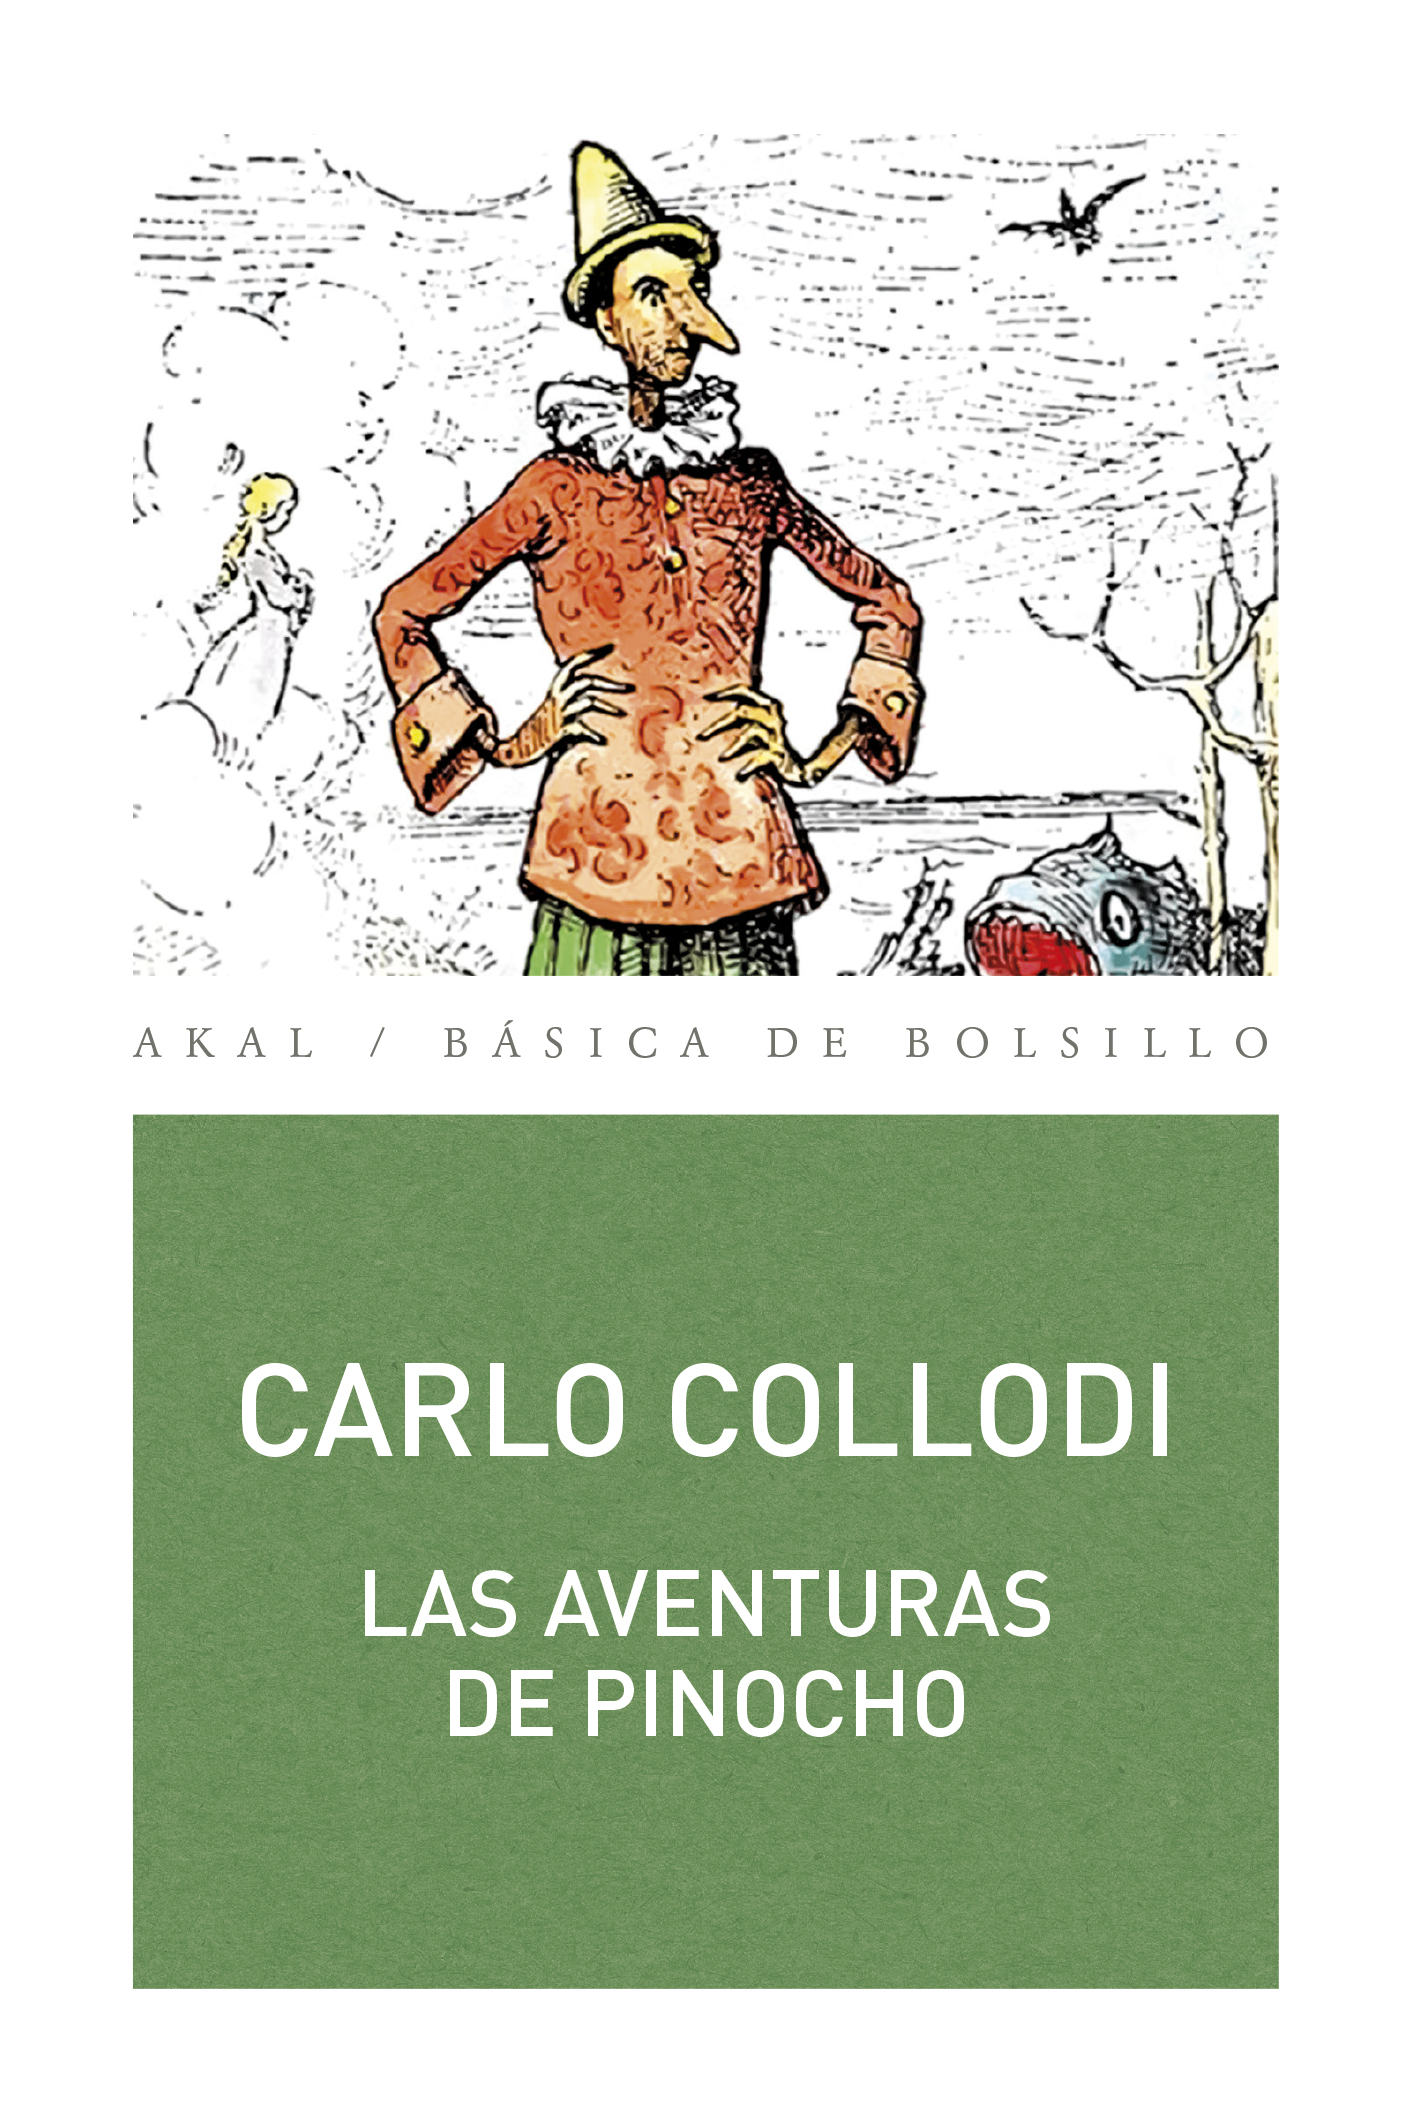 Portada del libro "Las aventuras de Pinocho", de Carlo Collodi, en la edición de Akal. (Cortesía: Ediciones Akal).